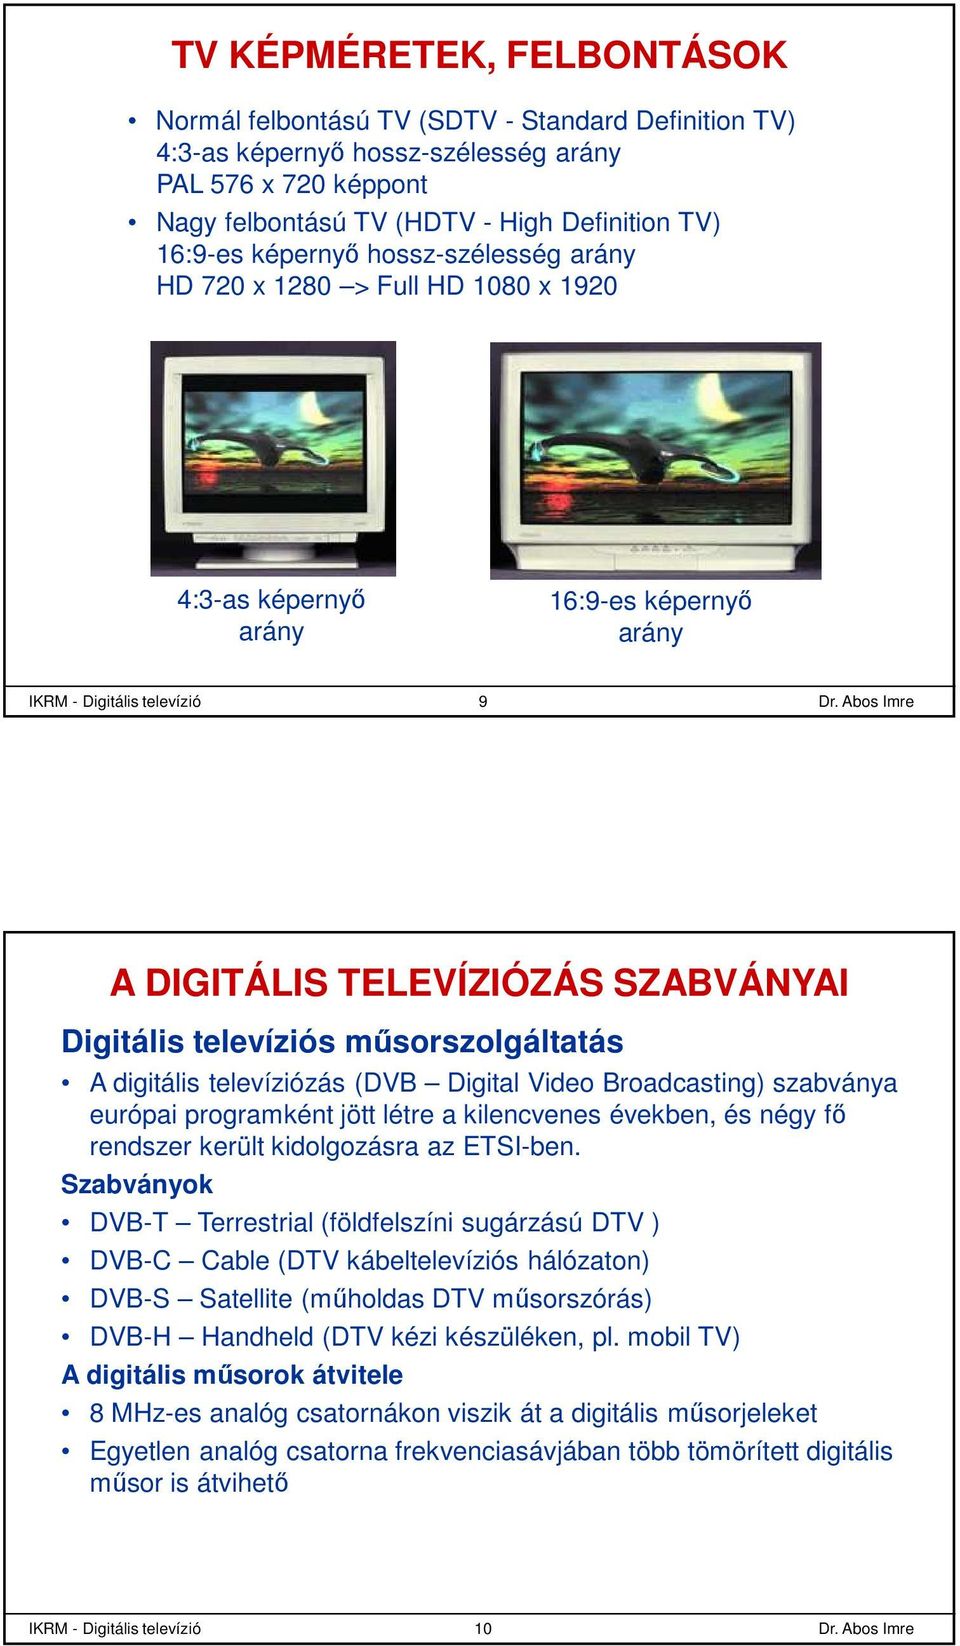 műsorszolgáltatás A digitális televíziózás (DVB Digital Video Broadcasting) szabványa európai programként jött létre a kilencvenes években, és négy fő rendszer került kidolgozásra az ETSI-ben.